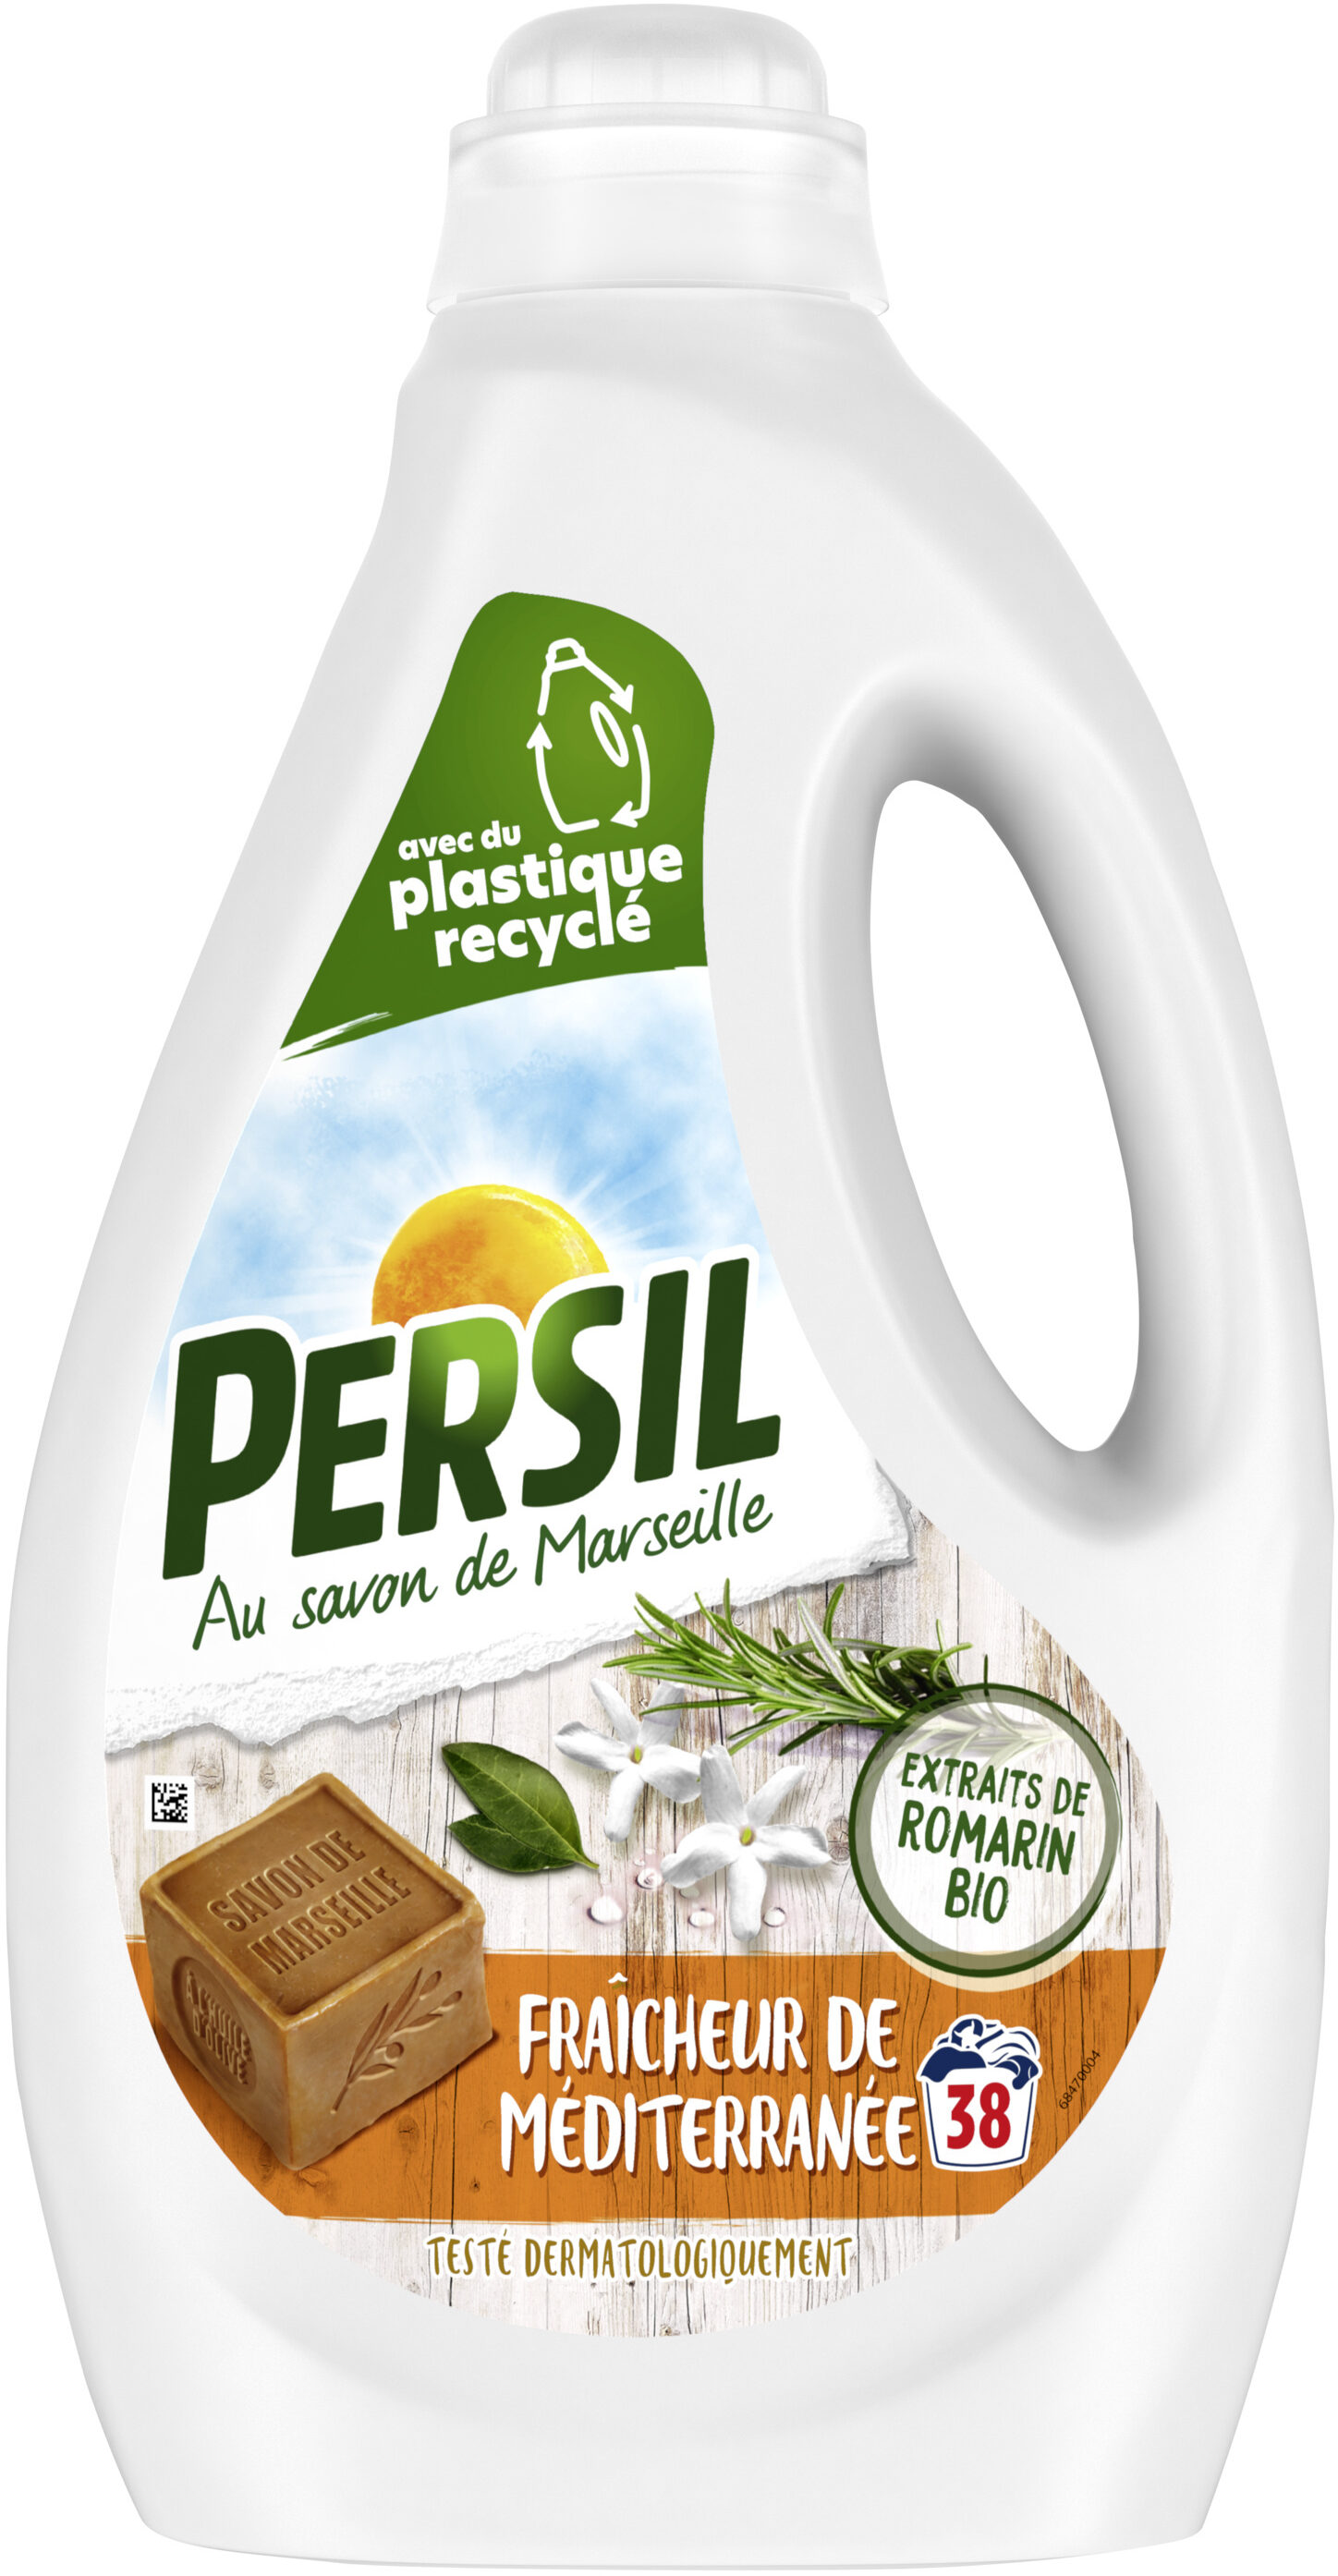 Persil Lessive Liquide Fraîcheur de Méditerranée aux extraits de Romarin Bio 1,9l 38 Lavages - Produit - fr